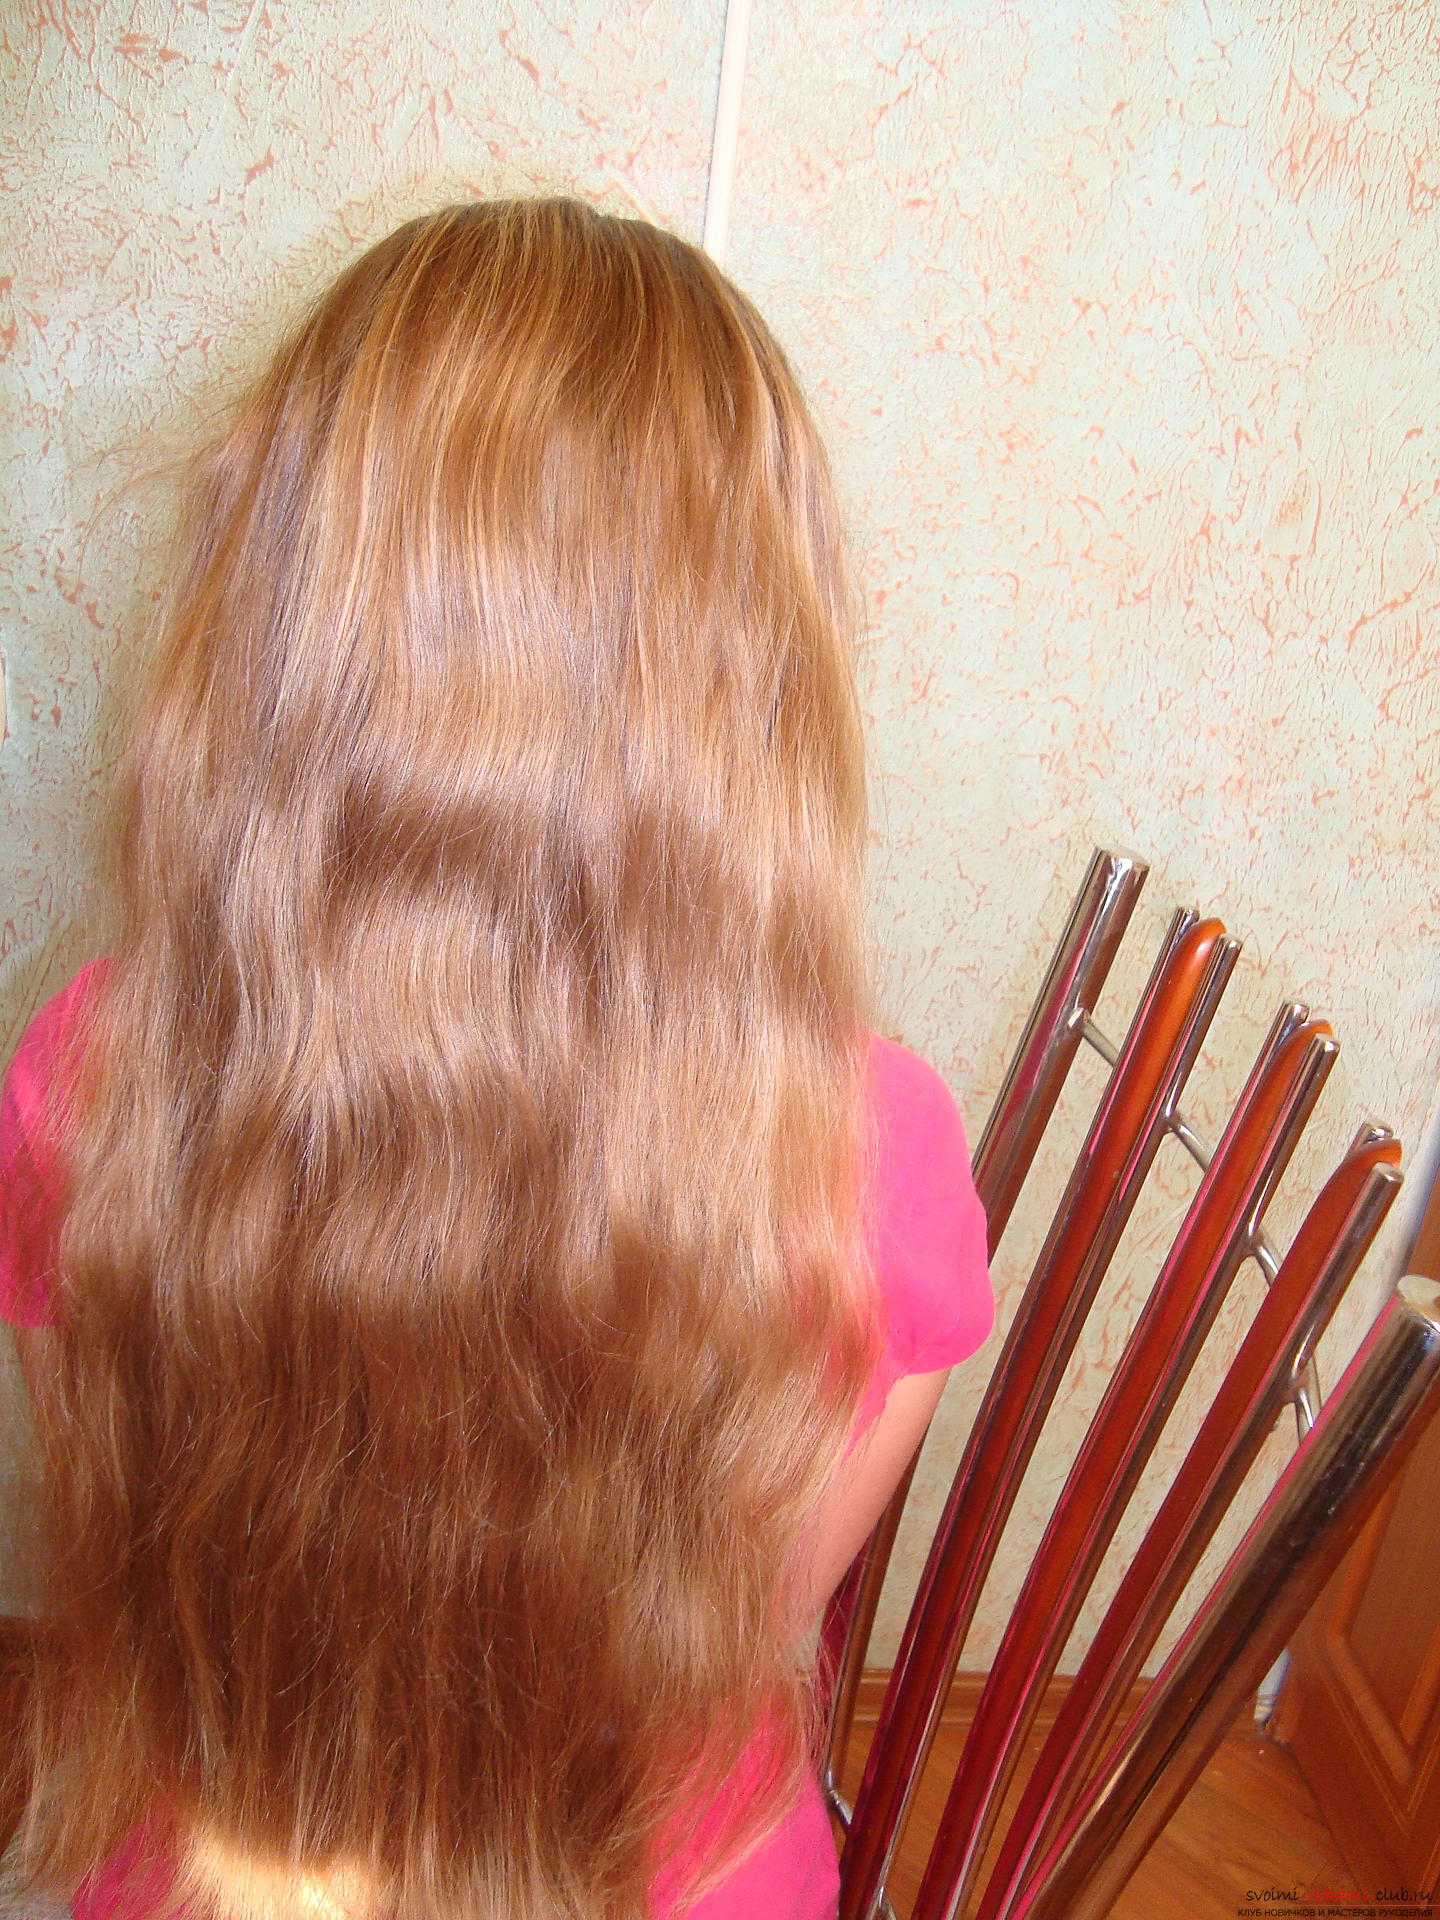 Мастер класс с фото поможет в обучении по созданию интересной прически, которая плетется на длинных волосах. Фото №2